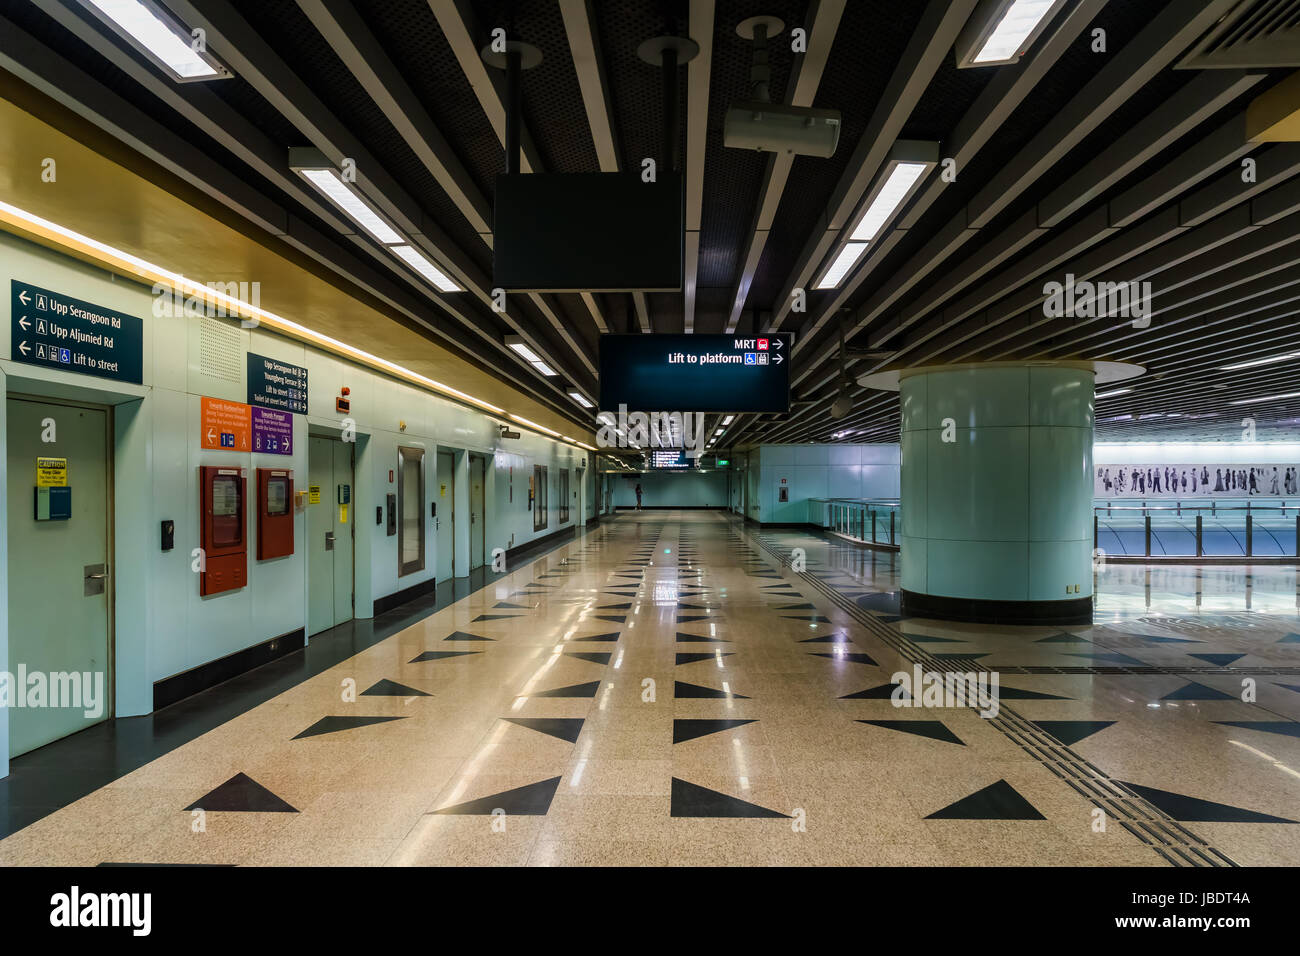 Singapore - Marzo 25, 2017: interno della stazione MRT. Sistema di Transito Rapido di massa costituente il componente principale del sistema ferroviario in Singapore, intero Foto Stock